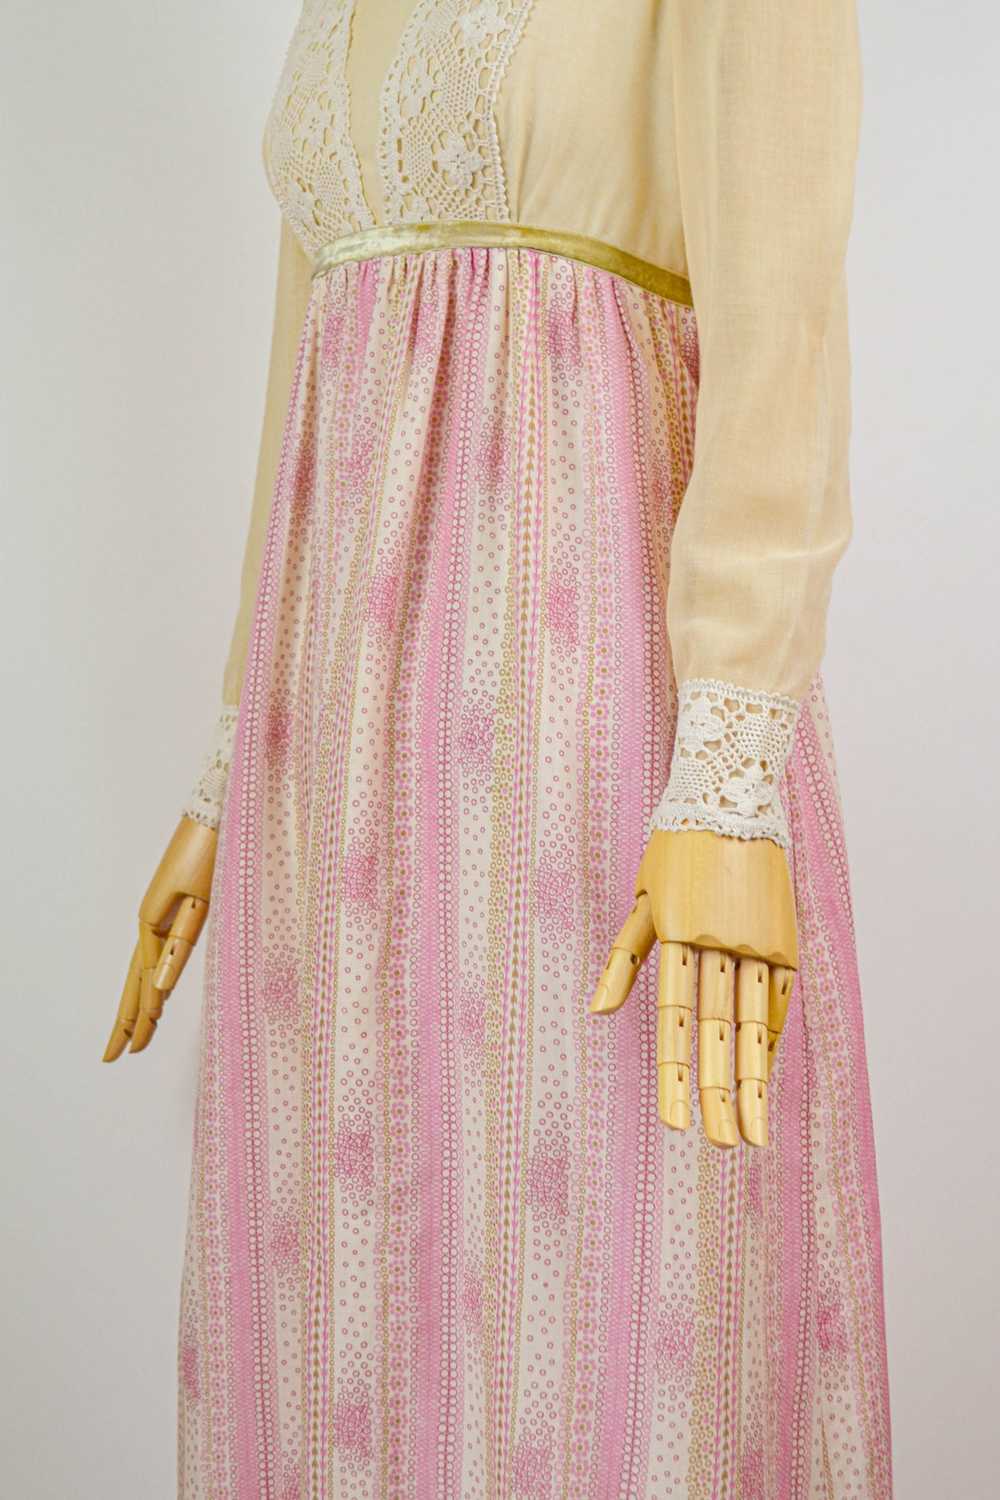 QUAINT - 1970s Vintage Angela Gore Prairie Dress … - image 12